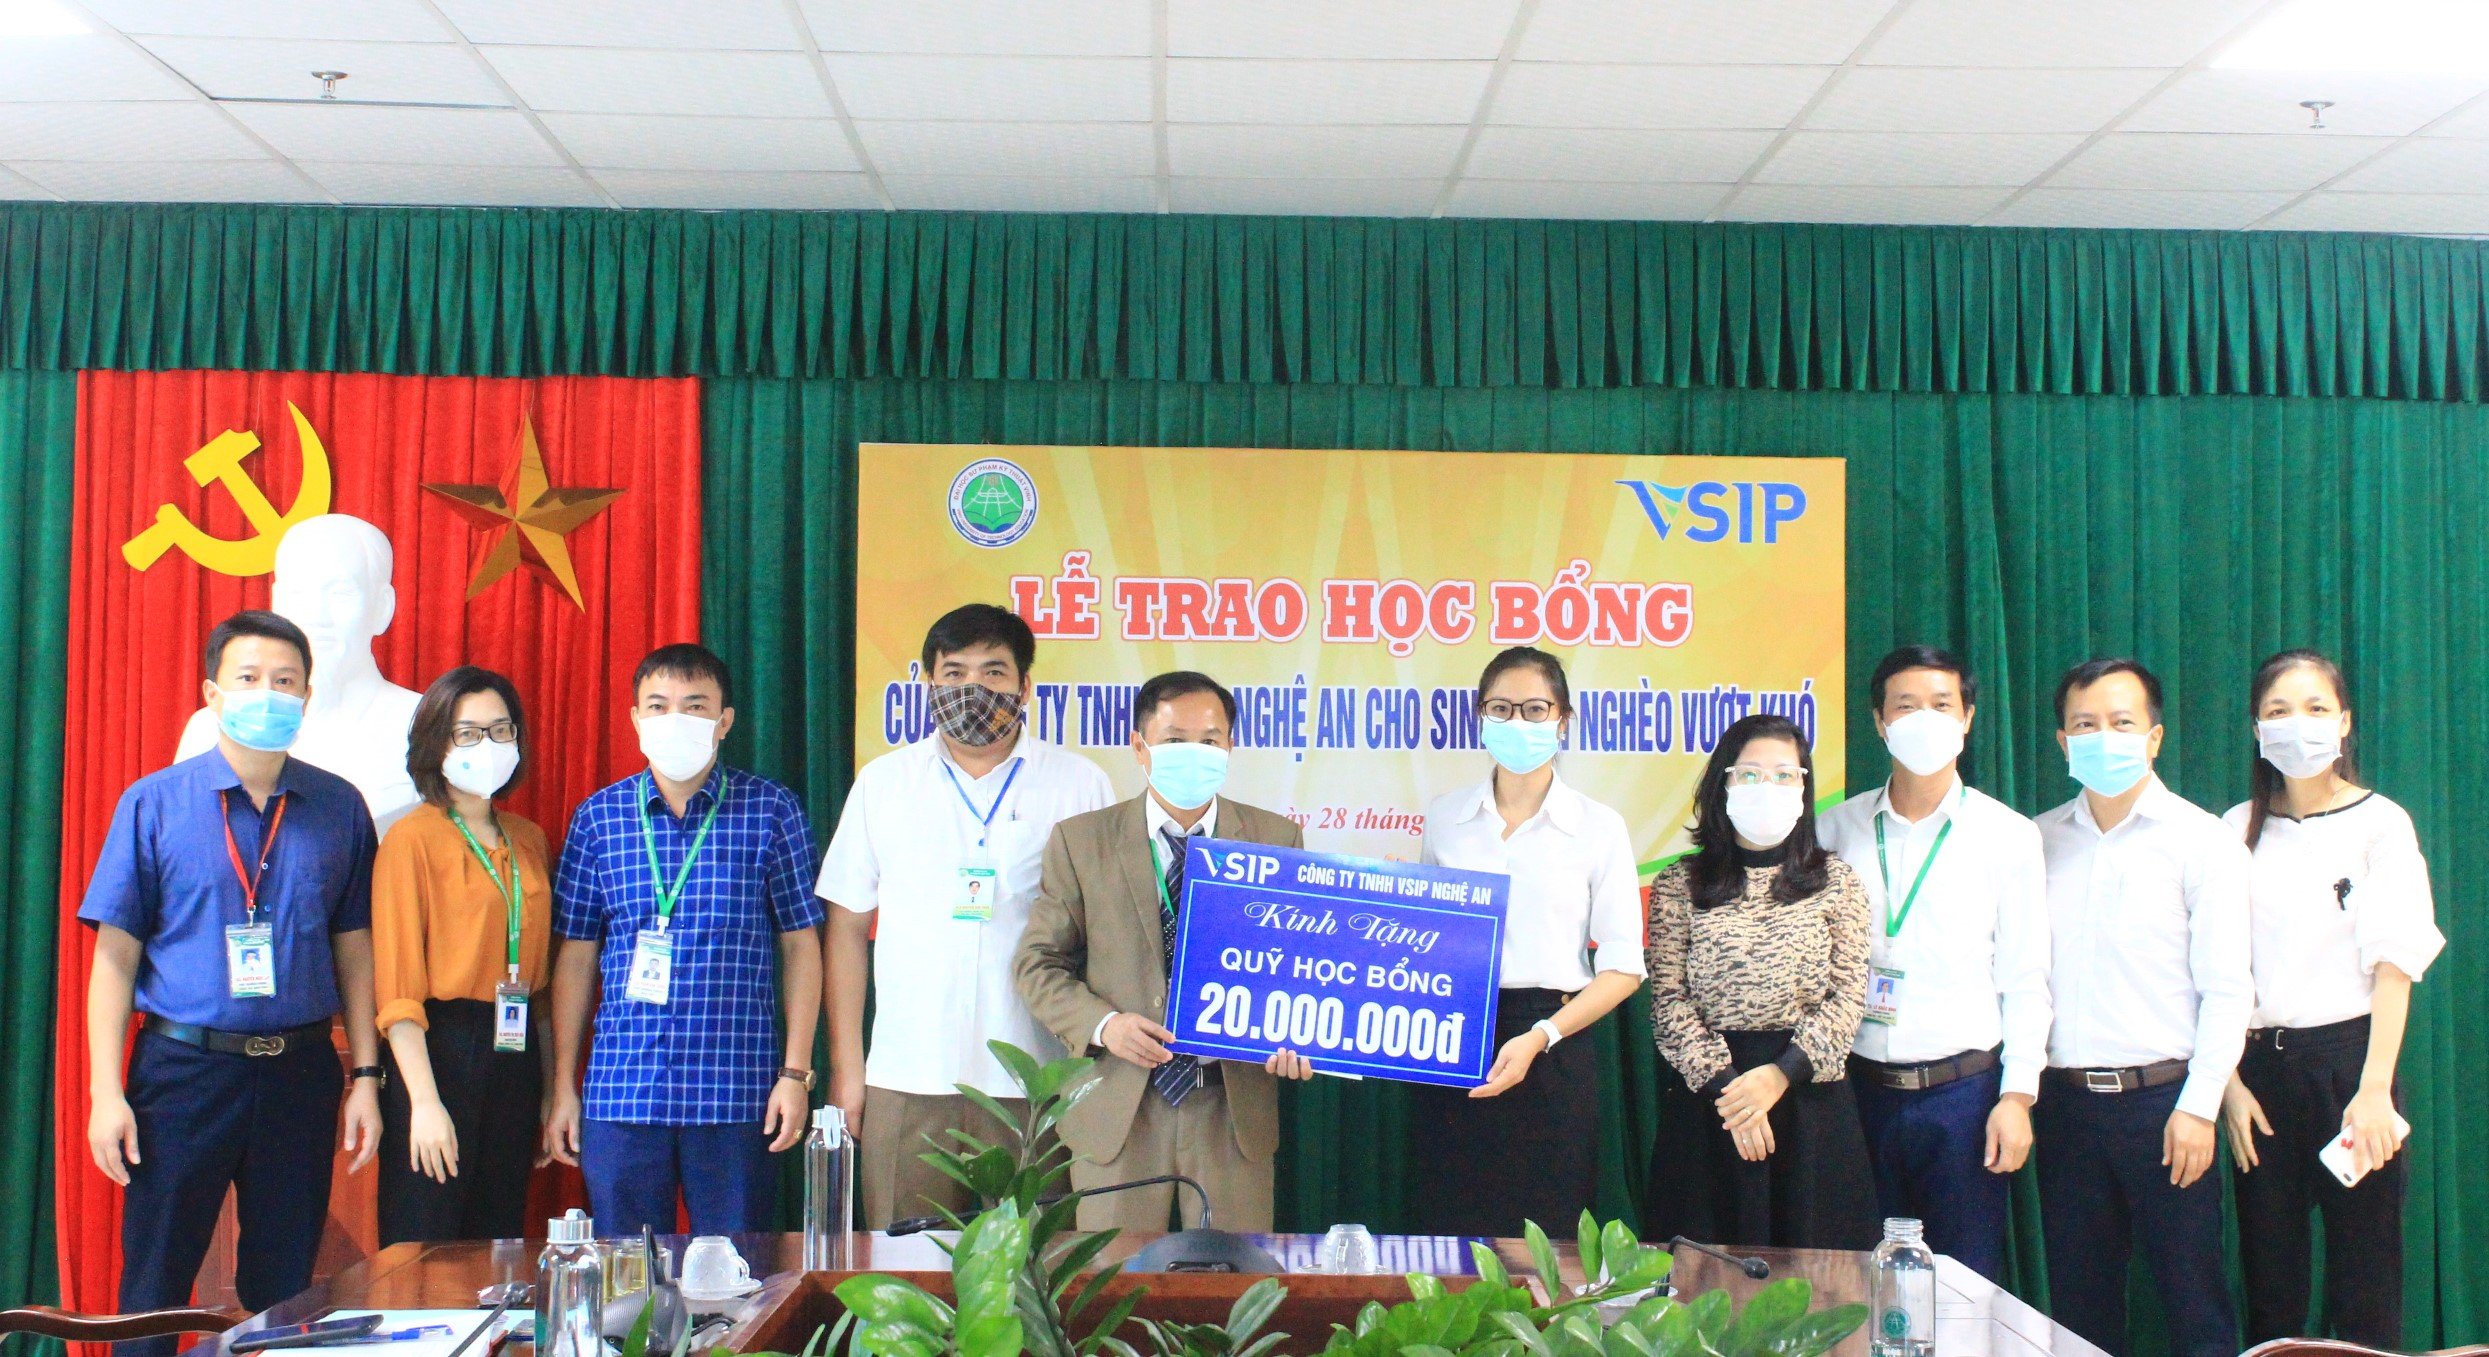 Trao tặng học bổng của Công ty TNHH VSIP Nghệ An cho sinh viên nghèo vượt khó